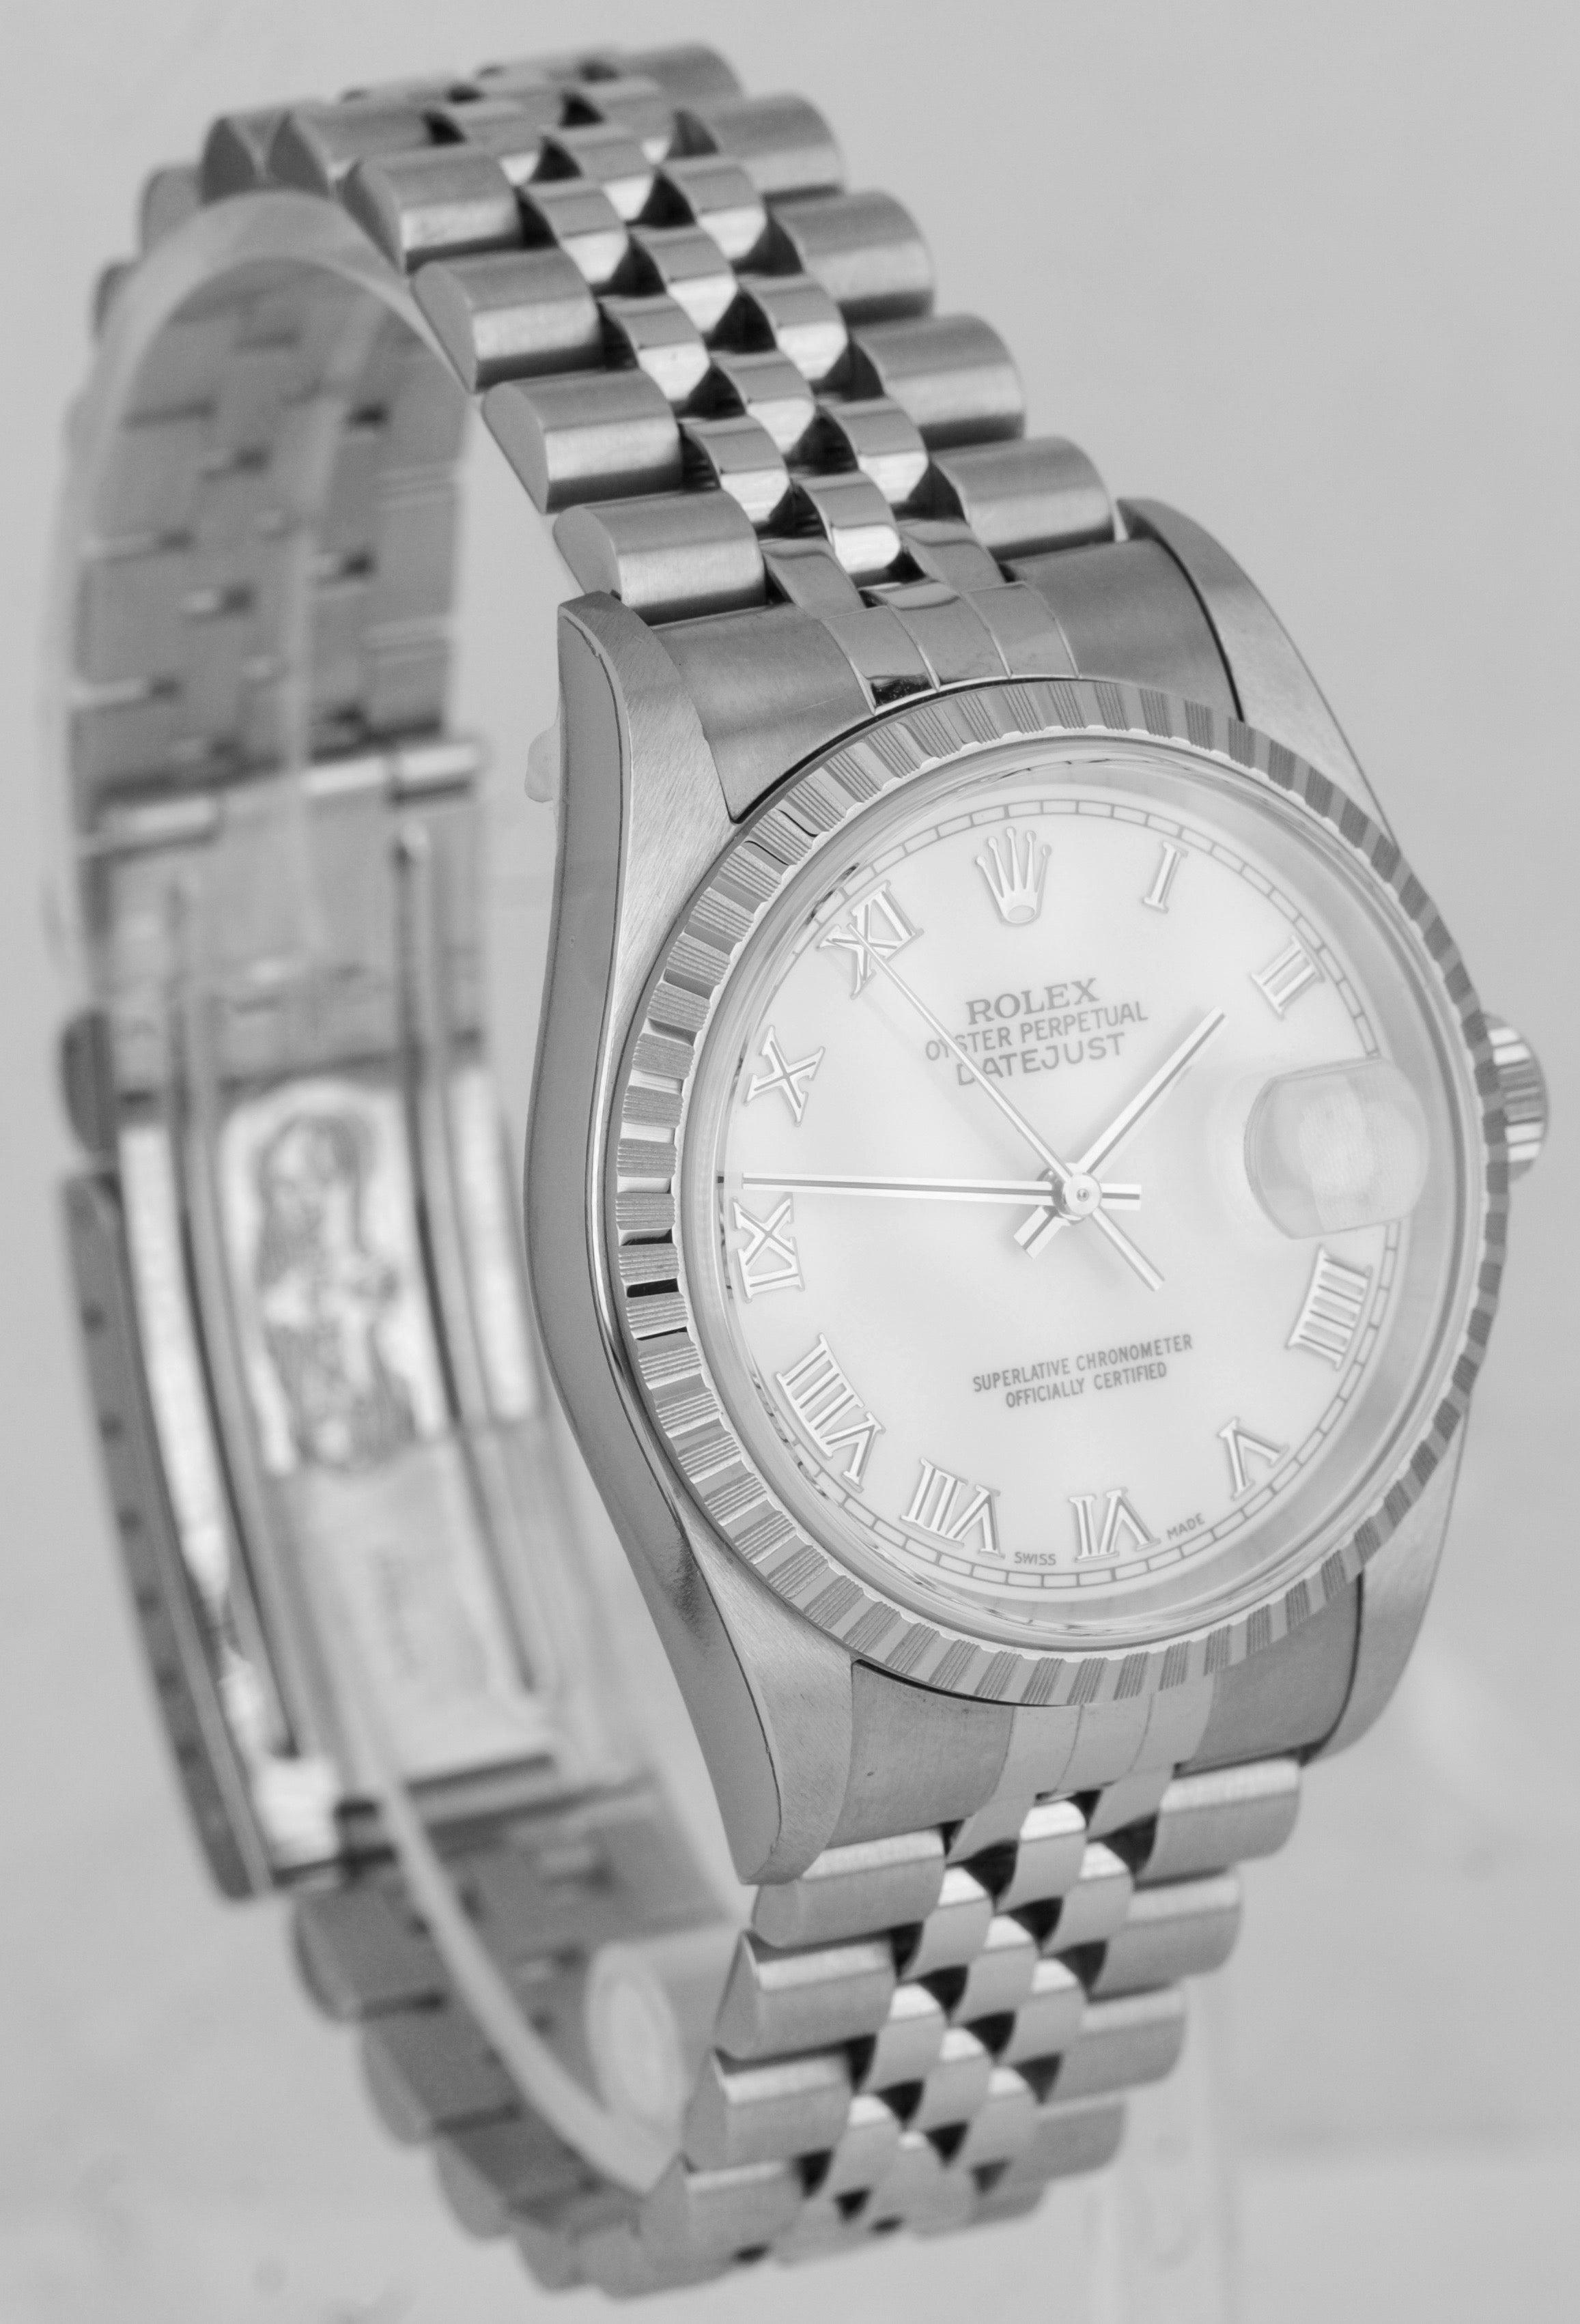 NEW NOS STICKERED 2006 Rolex DateJust 36mm White Roman Steel Jubilee Watch 16220